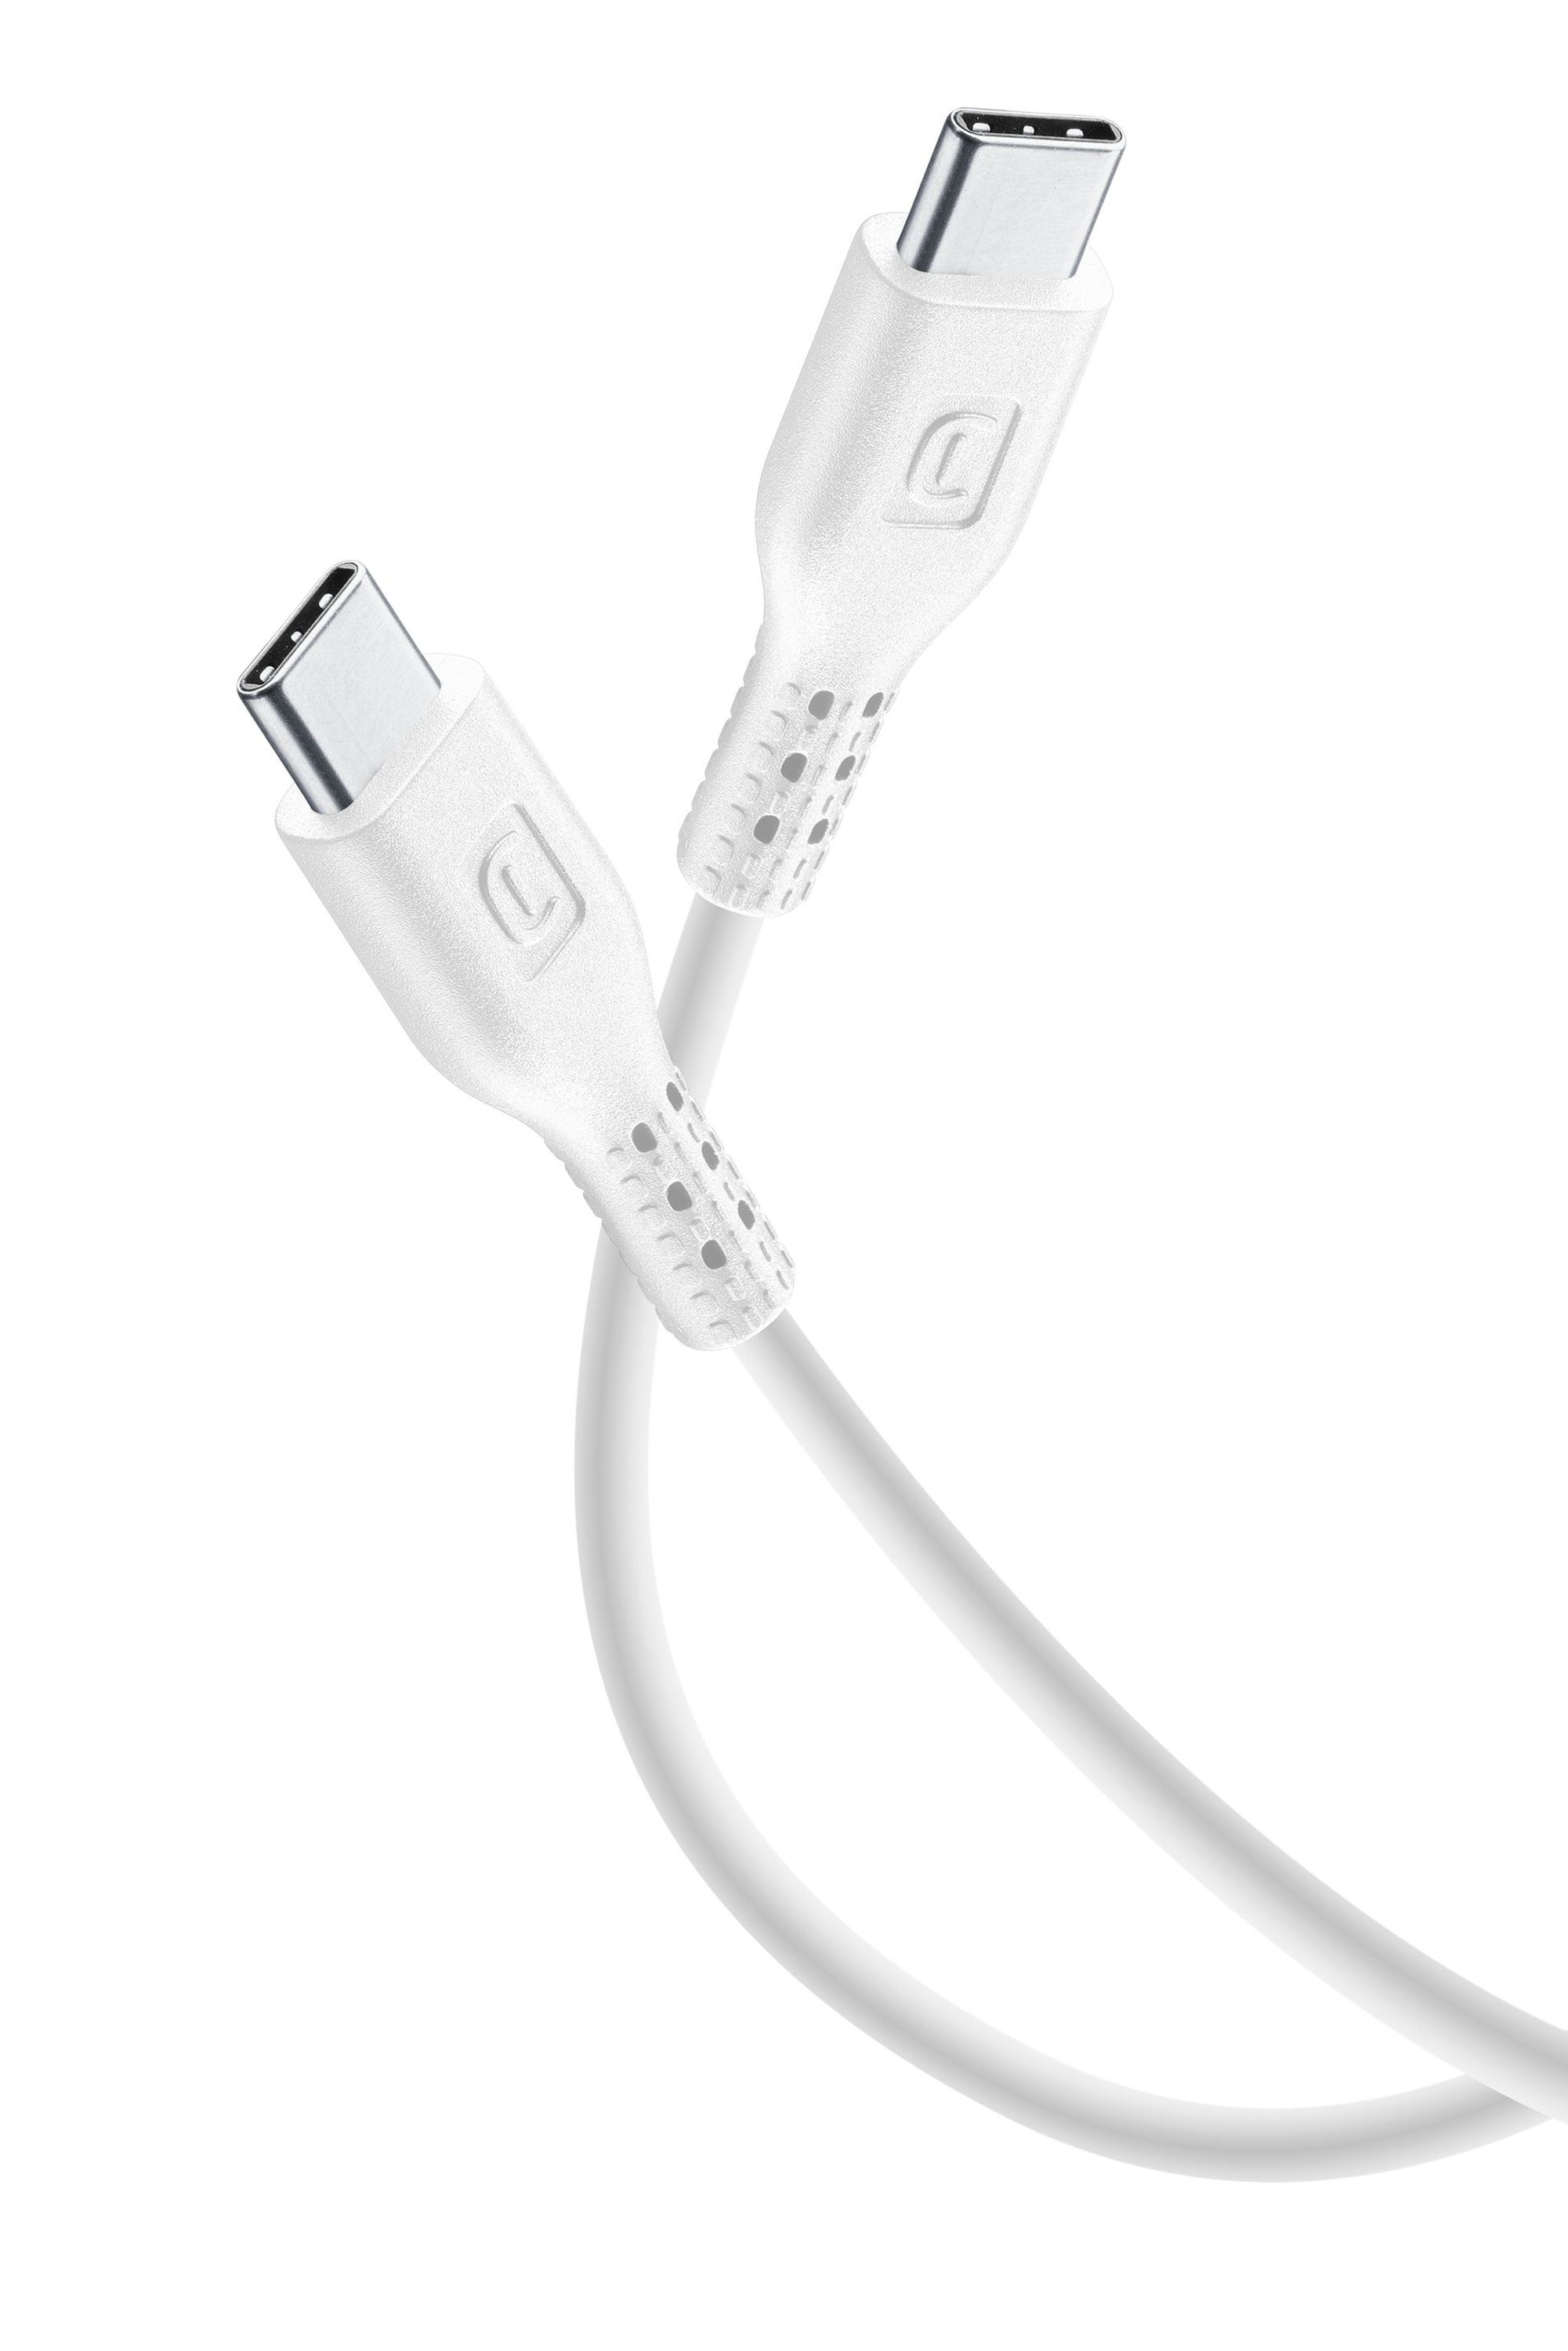 CABLE USB-A USB-C 2M BLANC : ascendeo grossiste Câbles